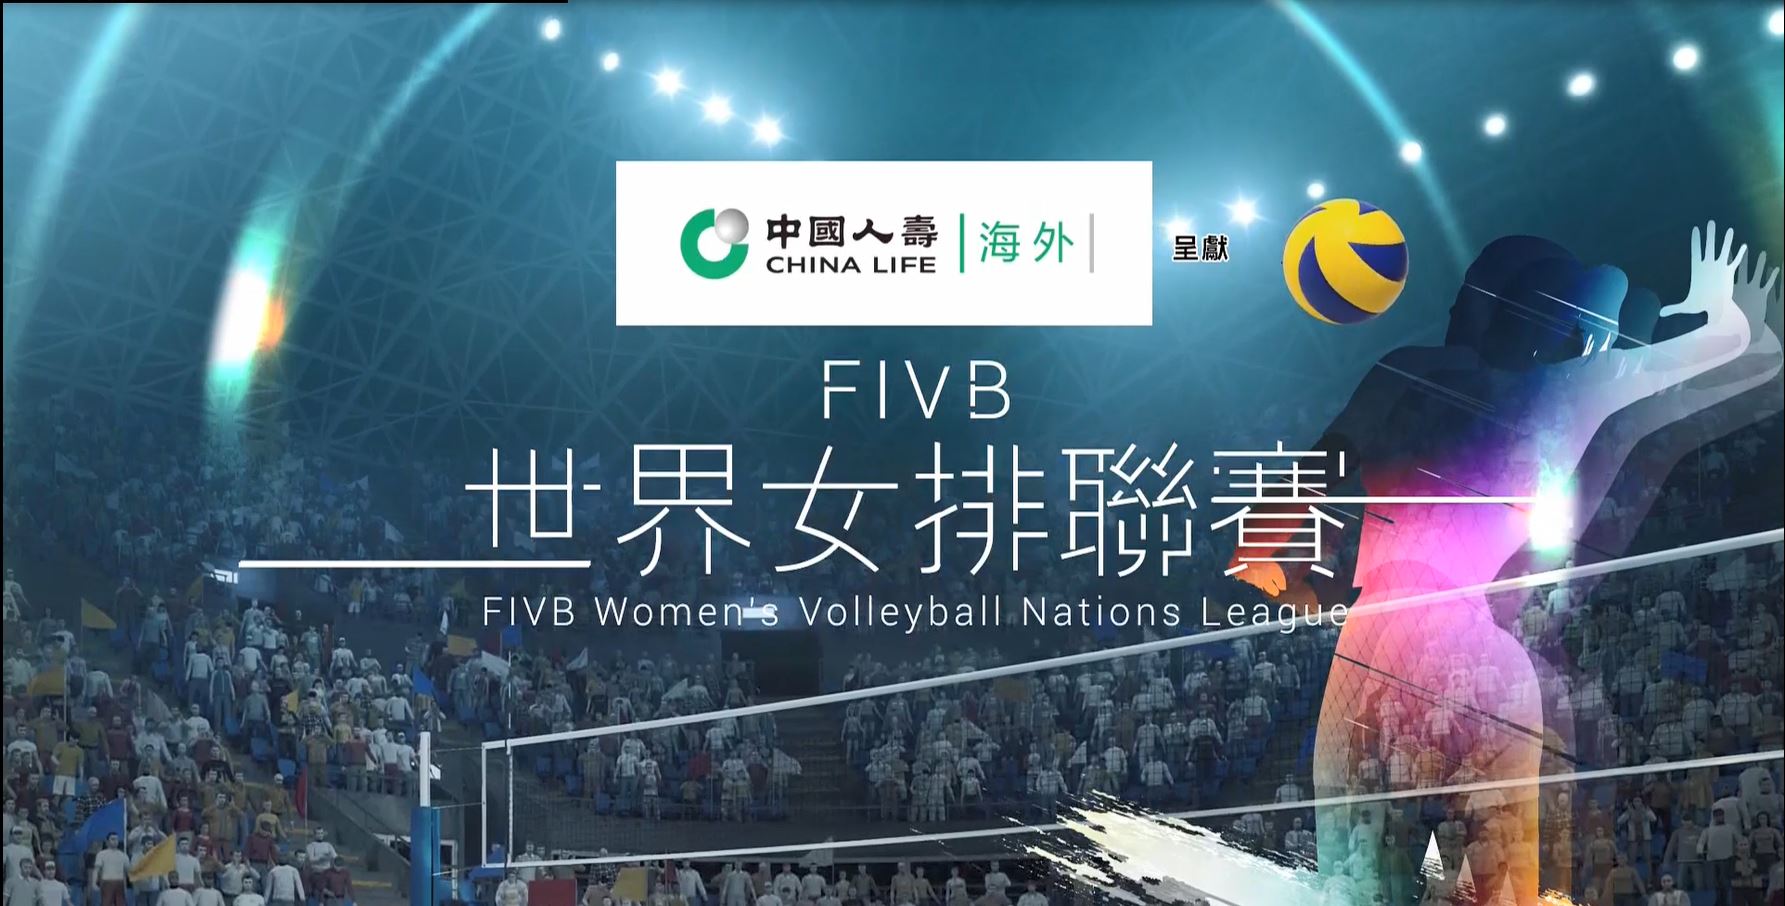 中國人壽(海外)全力支持「FIVB世界女排聯賽香港2019」圓滿結束，冠名贊助多項社區及宣傳活動，慶祝集團公司70周年